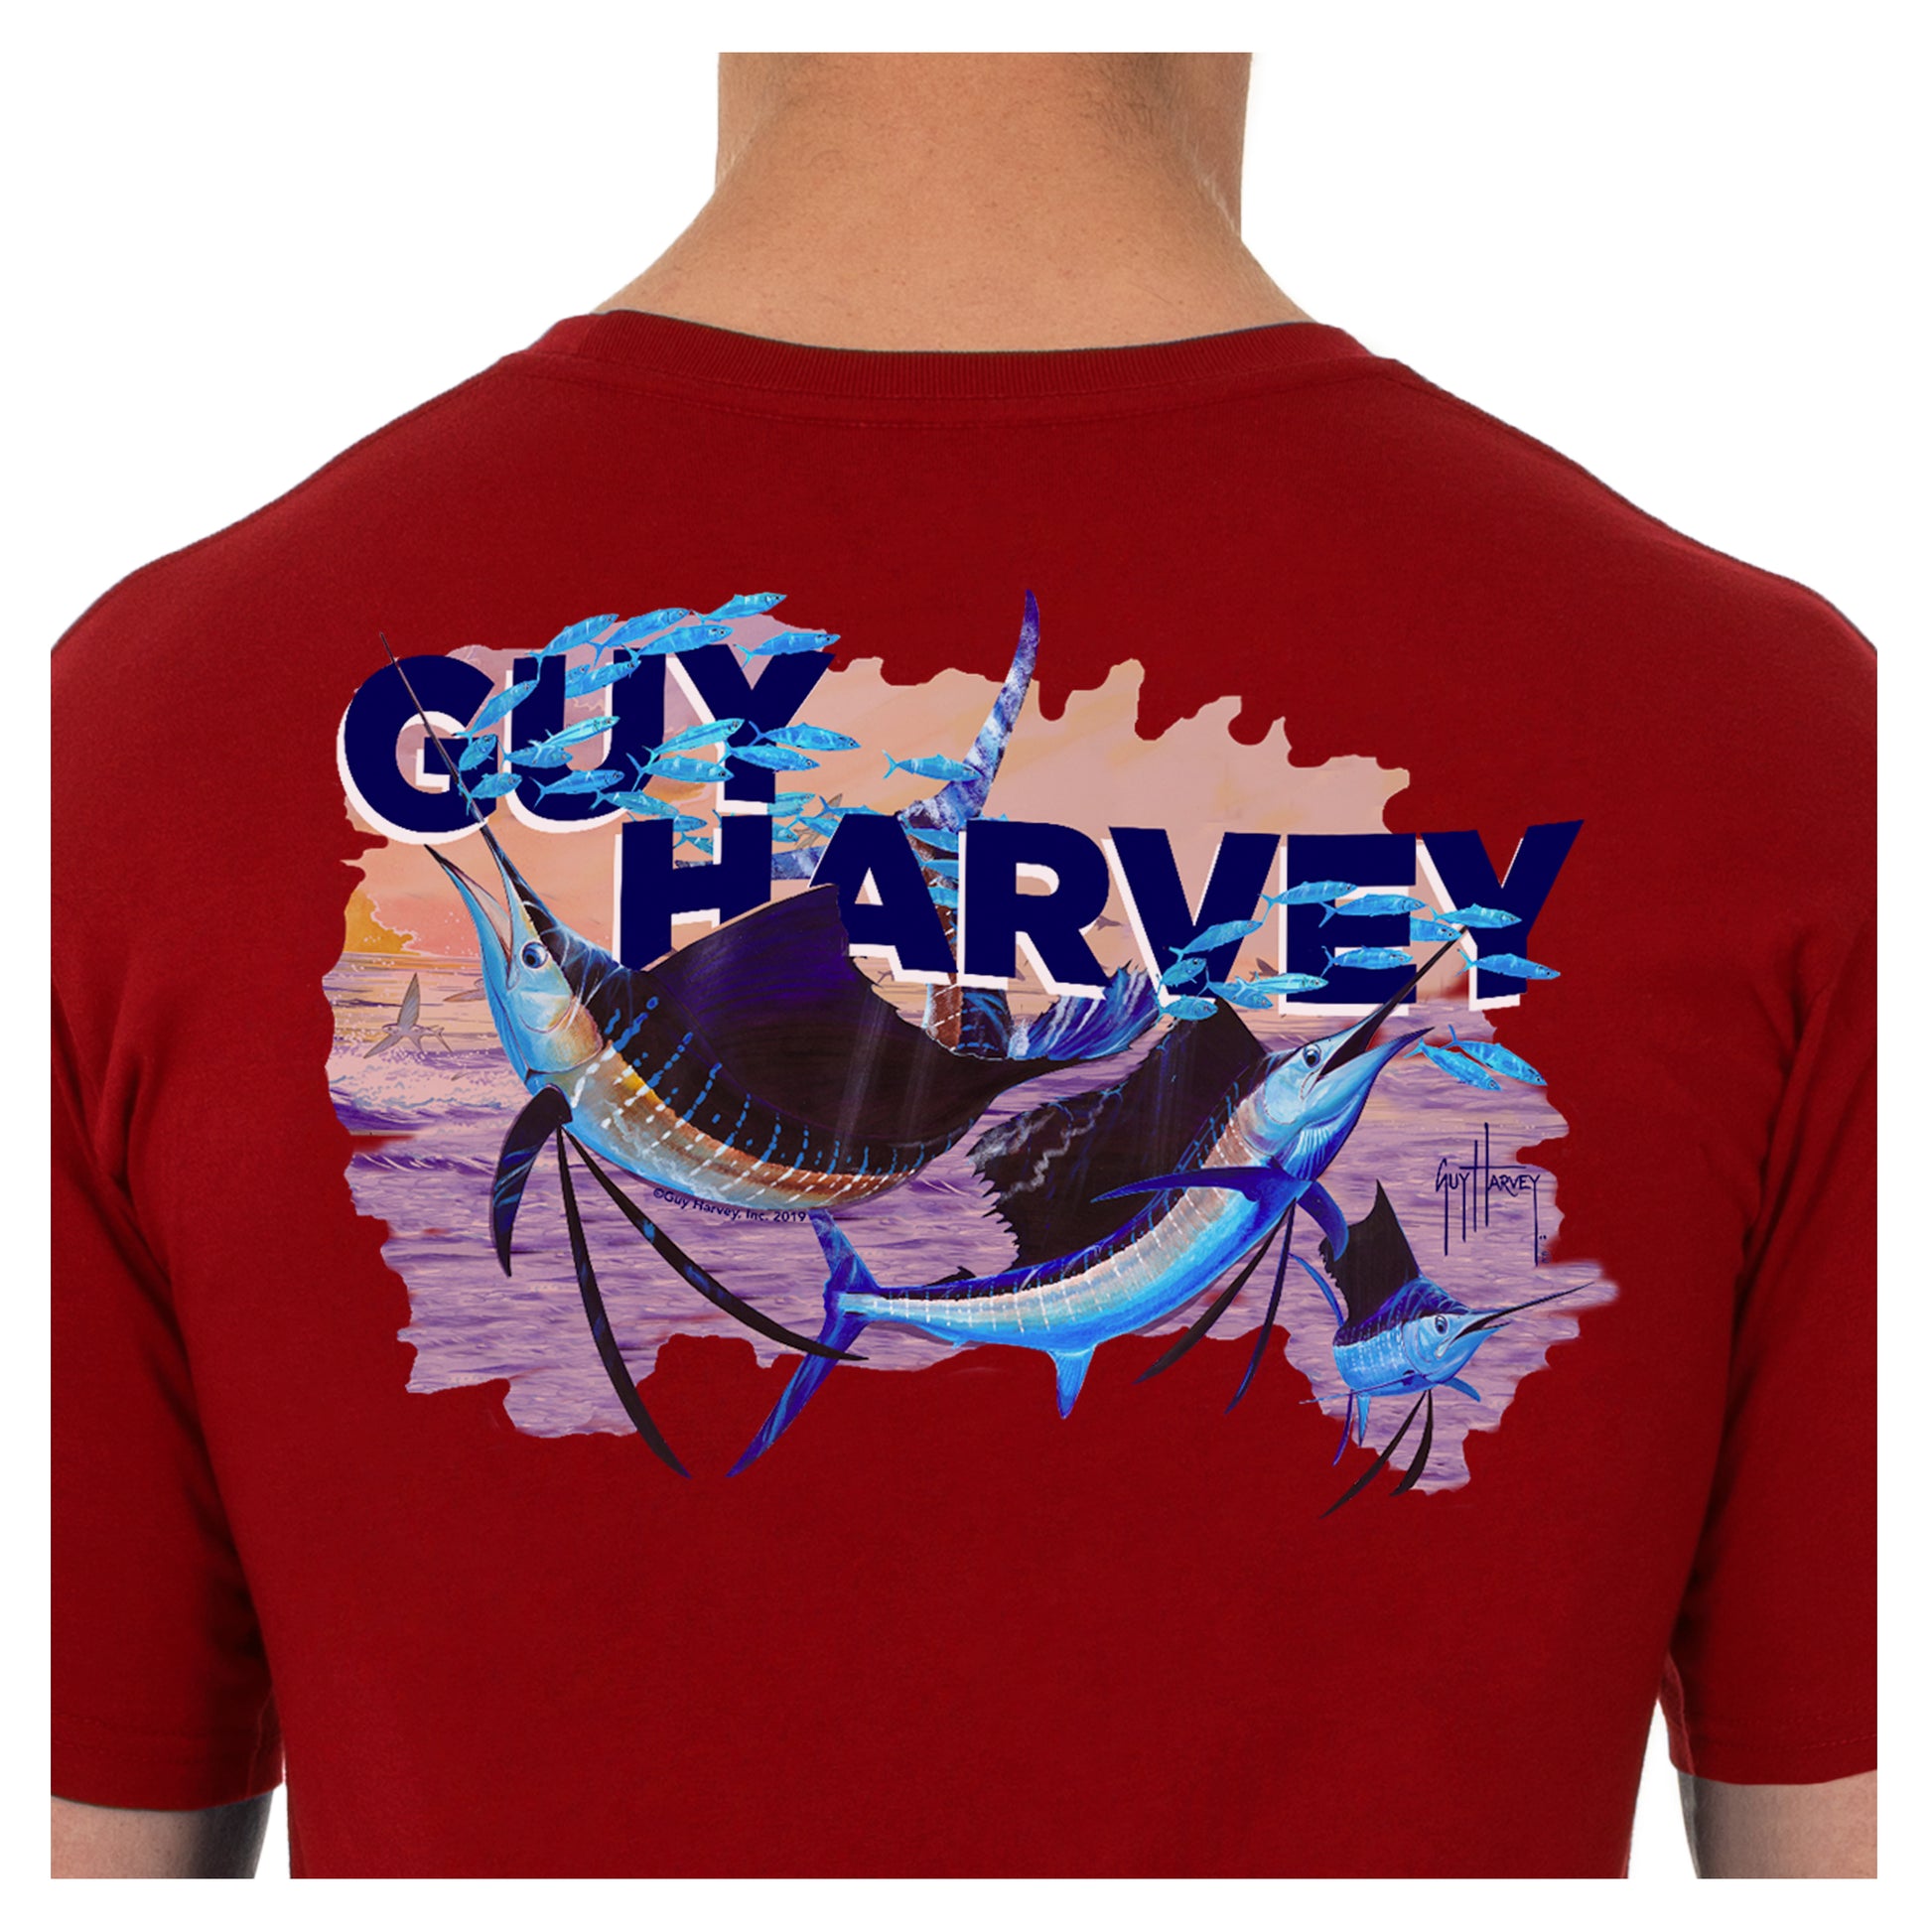 Guy Harvey Men's Offshore Fishing Short Sleeves Pocket T-shirt